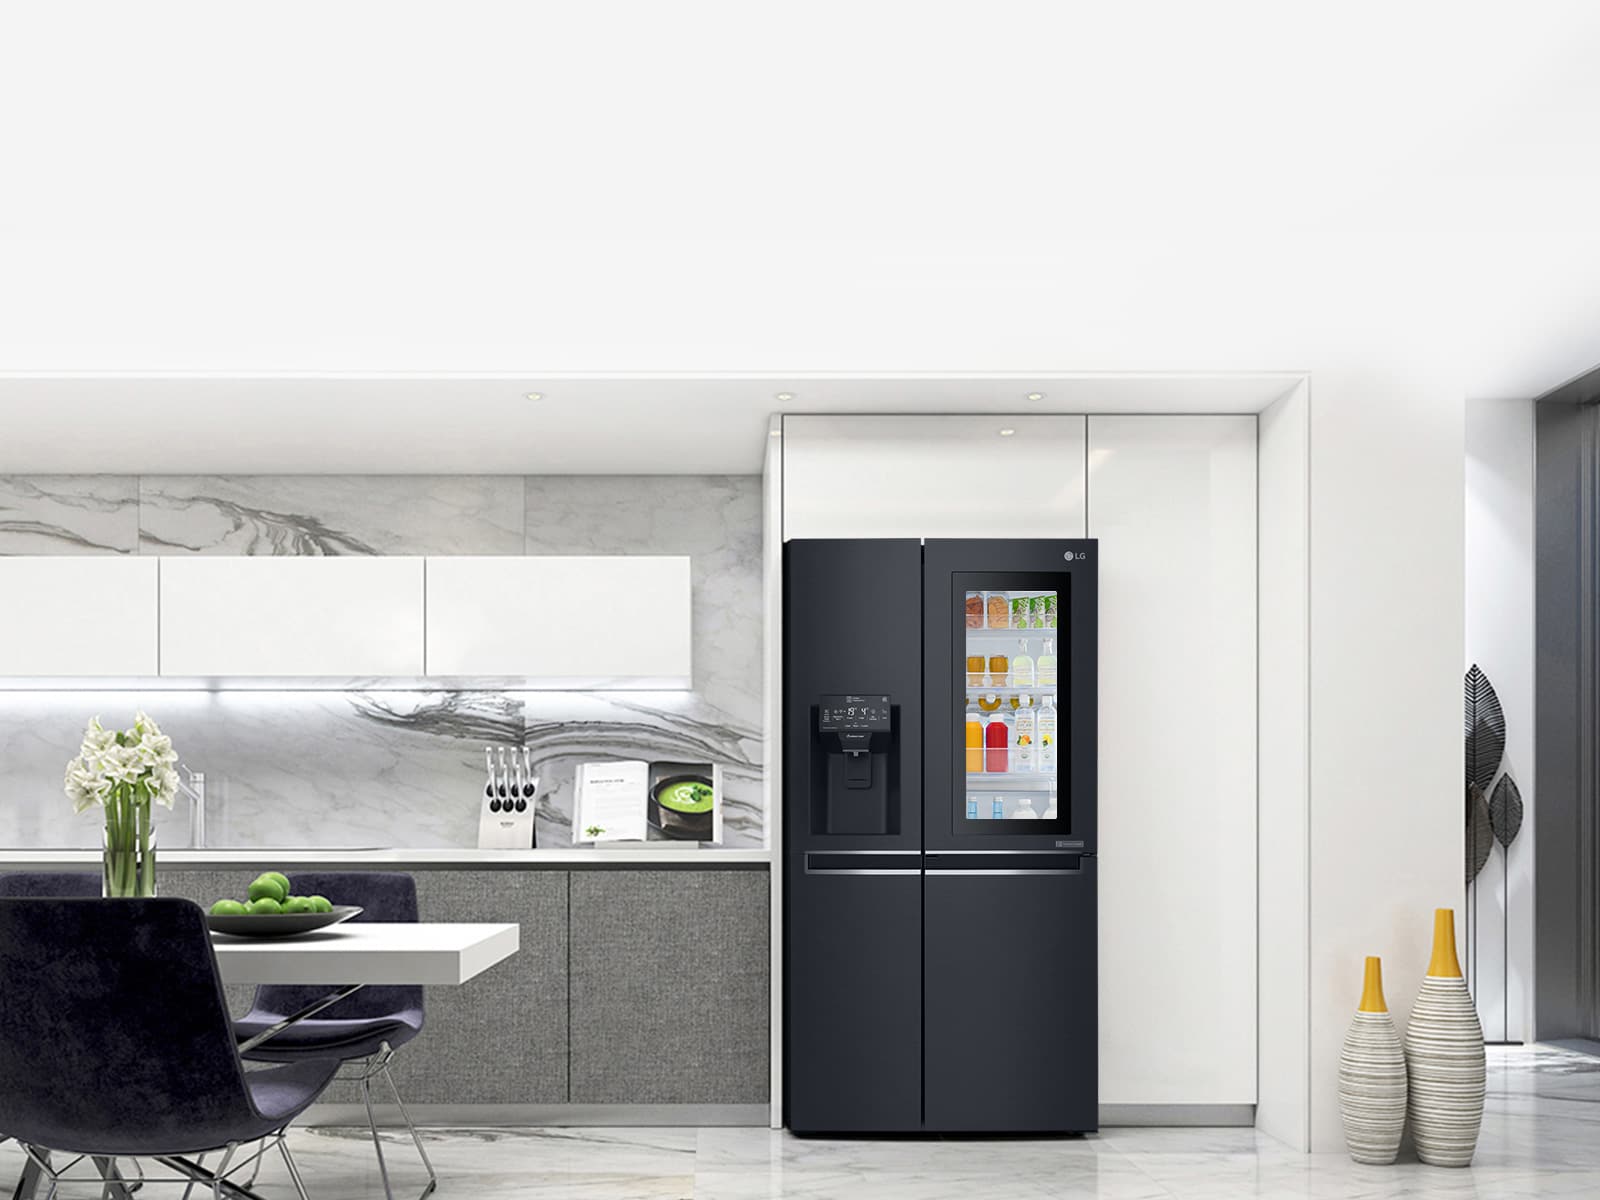 แอลจีส่งตู้เย็นมัลติดอร์รุ่นใหม่ ชูระบบอินเวอร์เตอร์ ลิเนีย คอมเพรสเซอร์ 1